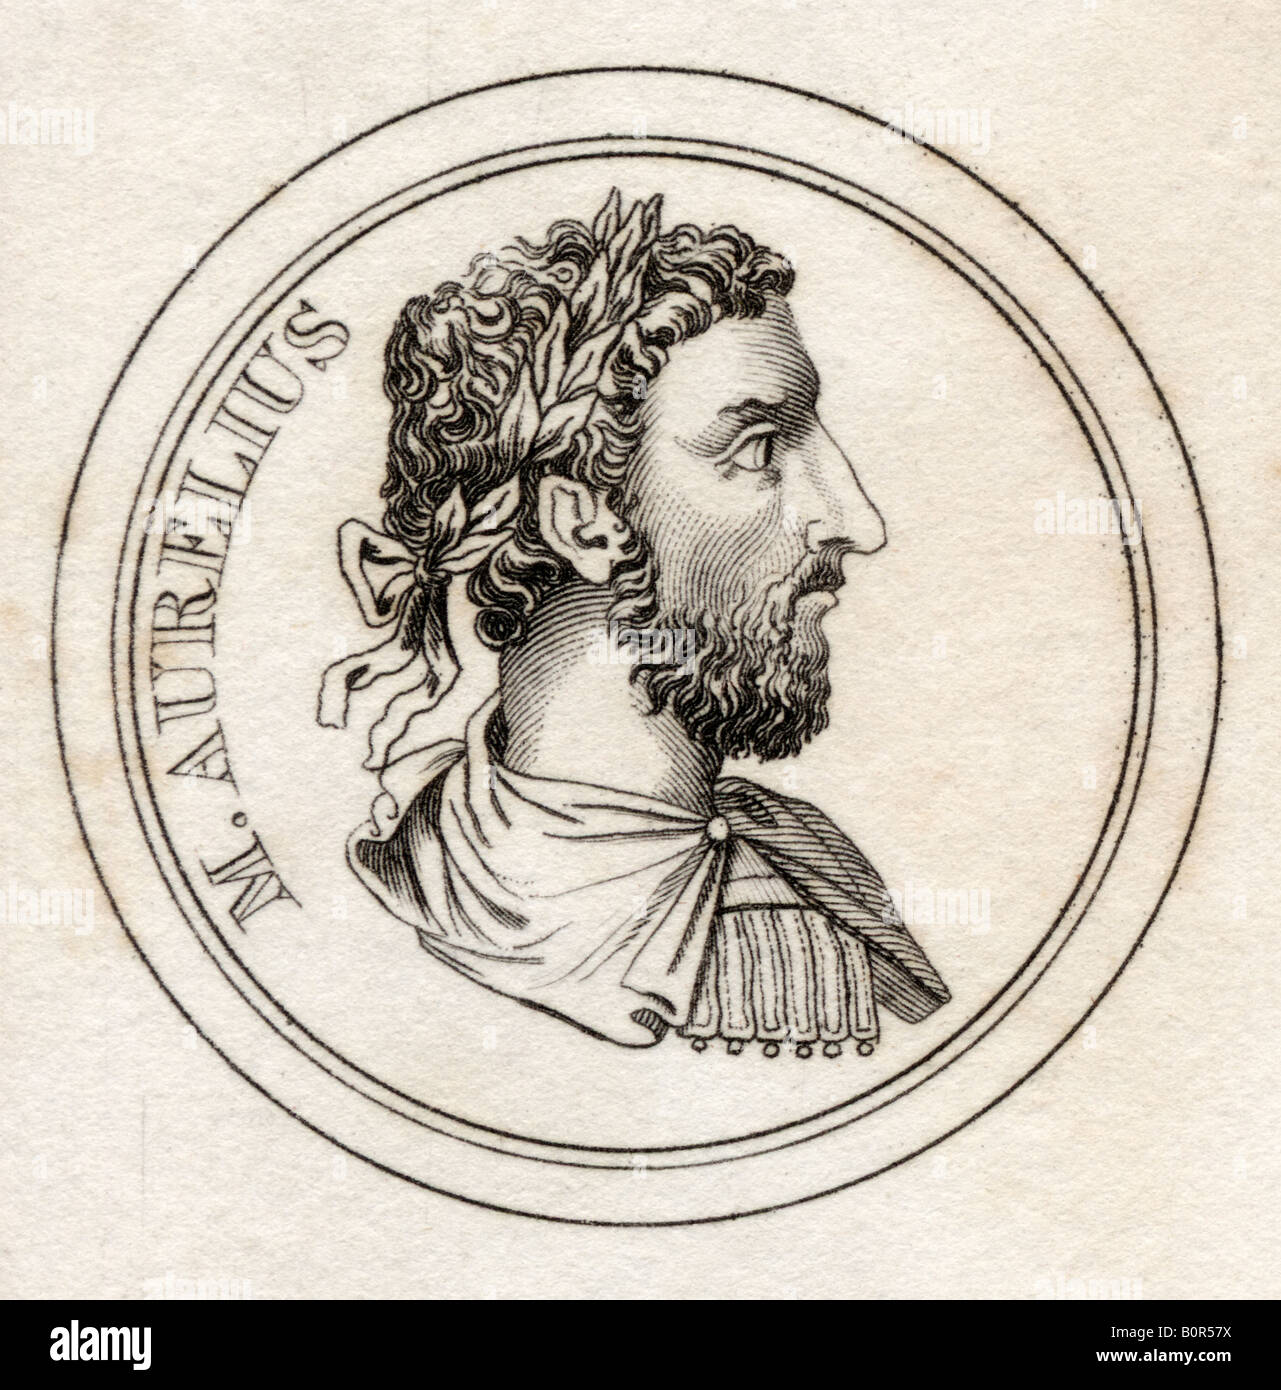 Marcus Aurelius, 121 - 180 A.D. Römischer Kaiser. Aus dem Buch Crabbs Historical Dictionary, veröffentlicht 1825. Stockfoto